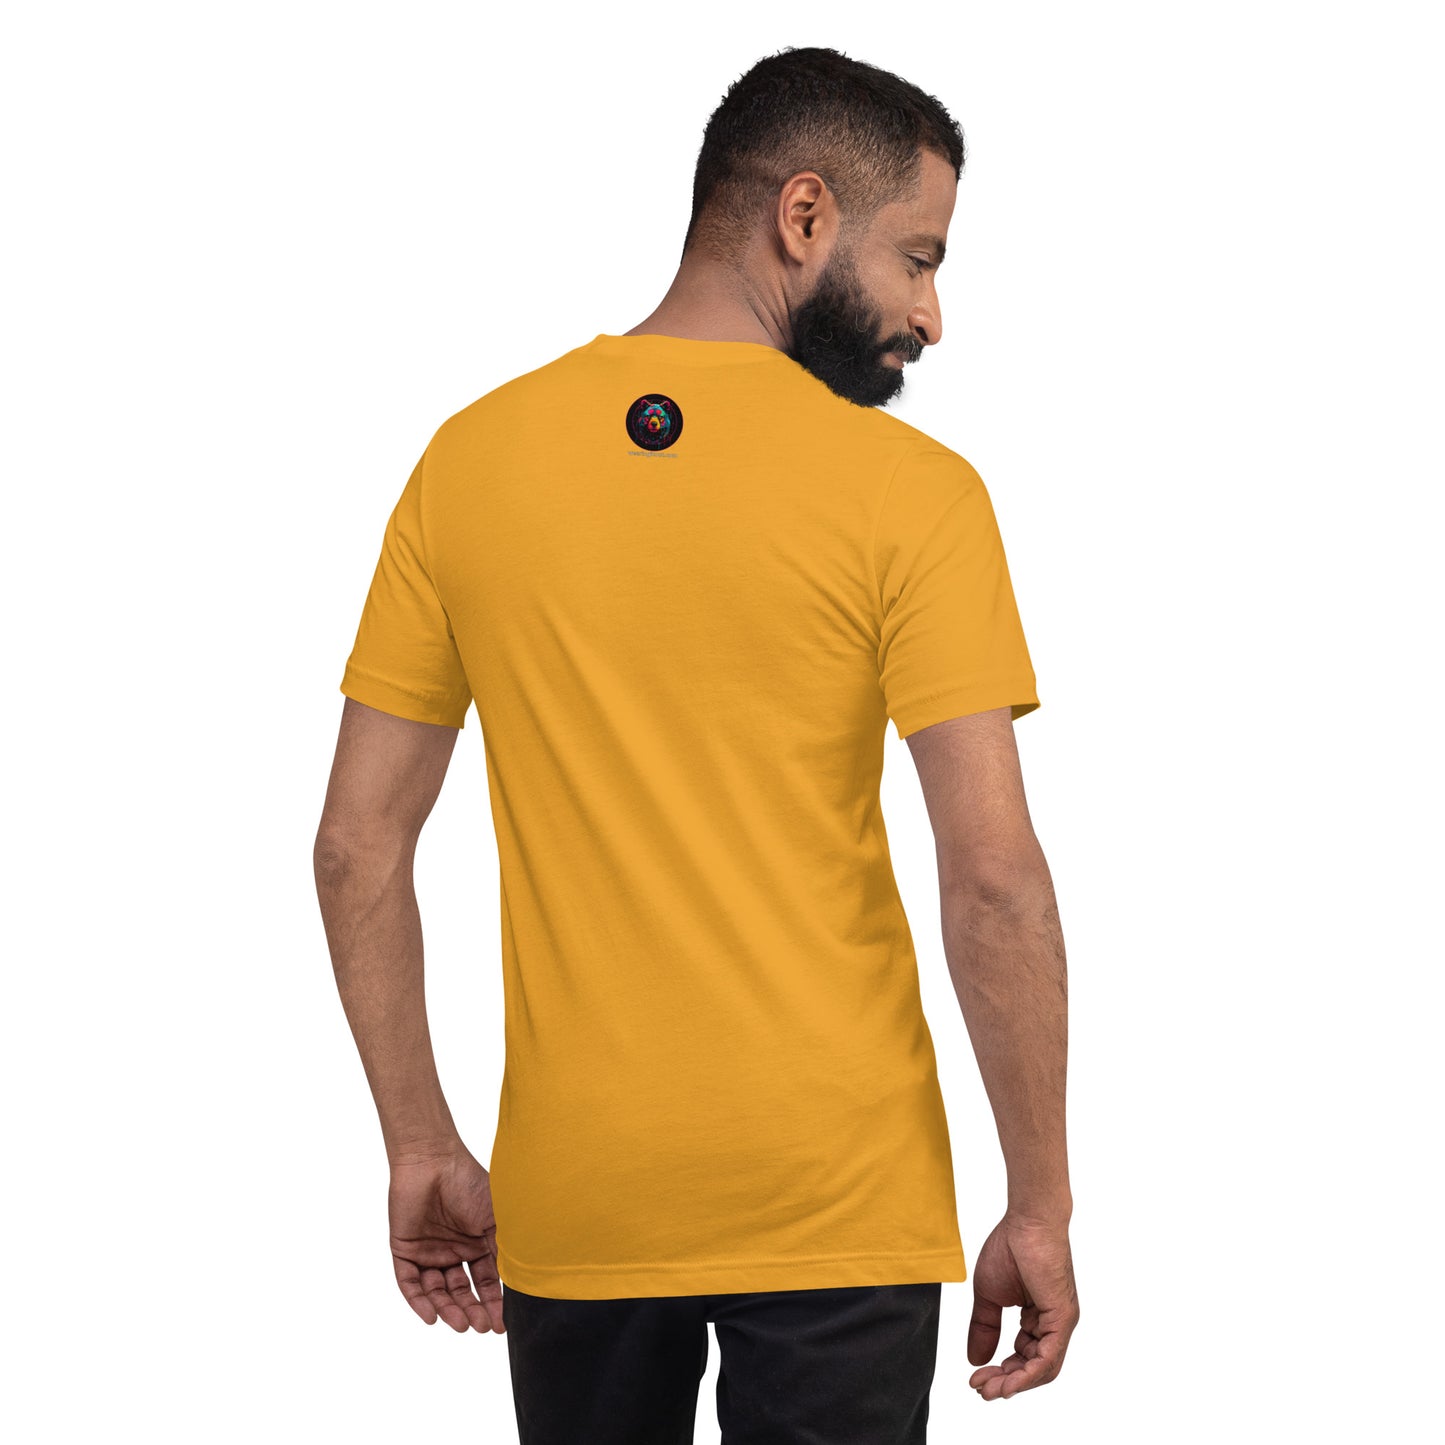 Neon Bear Men's T-Shirt